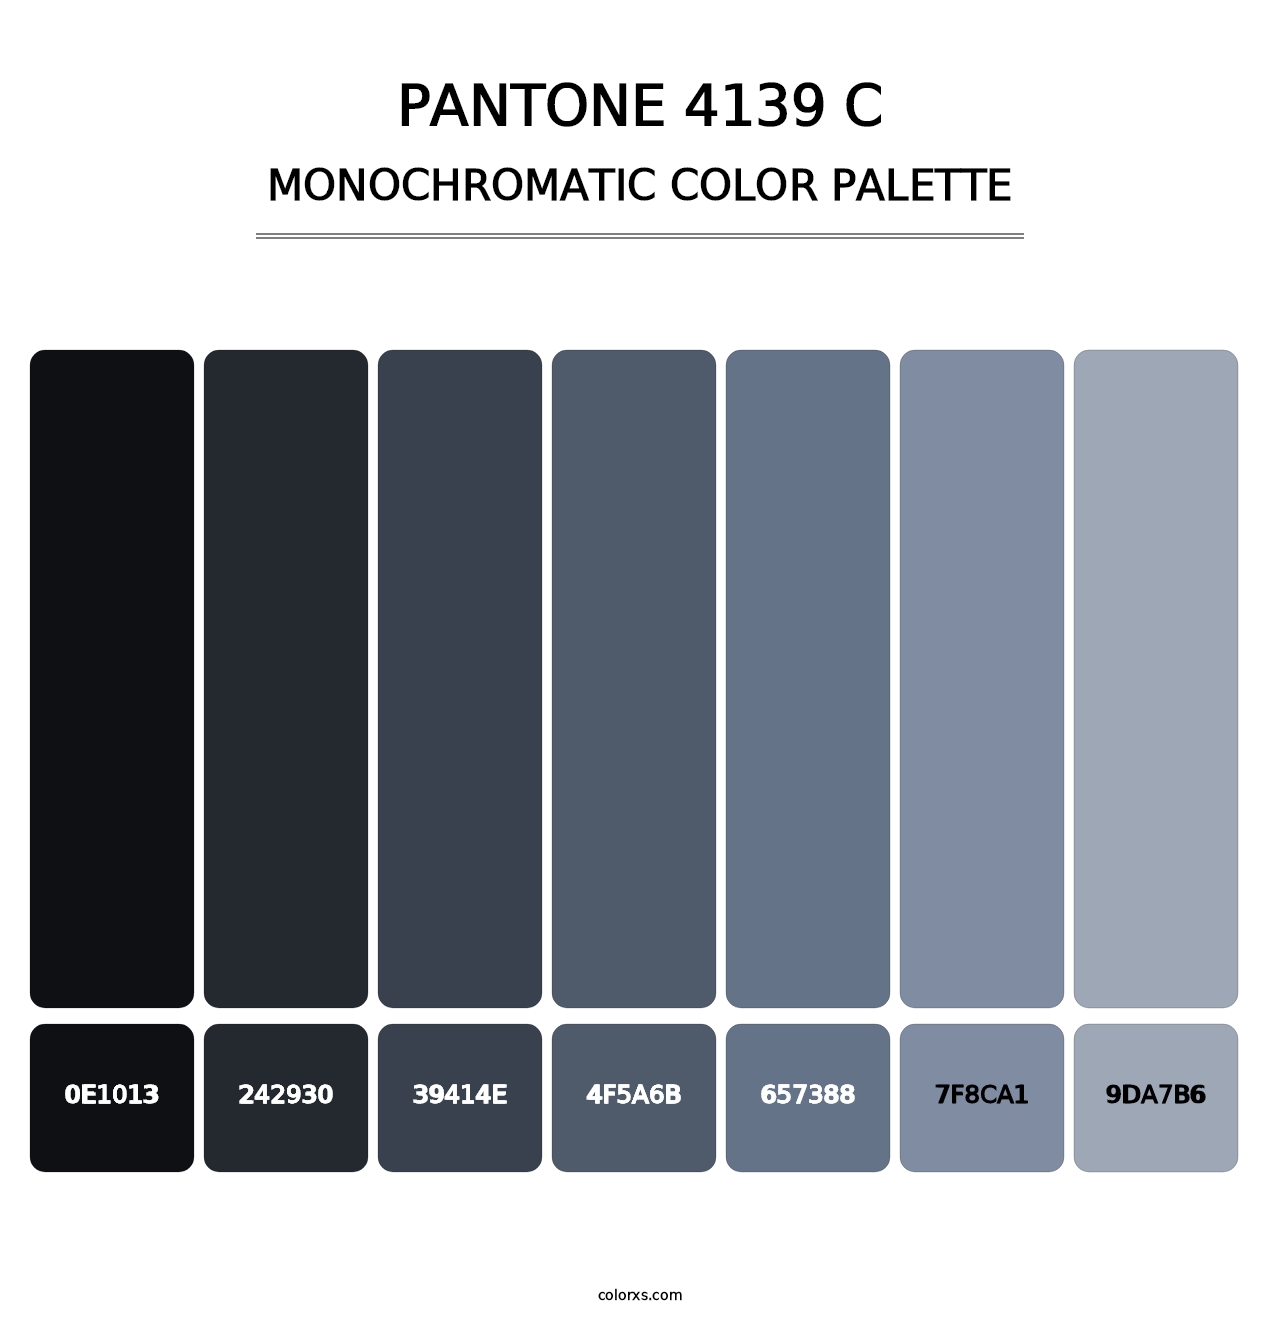 PANTONE 4139 C - Monochromatic Color Palette